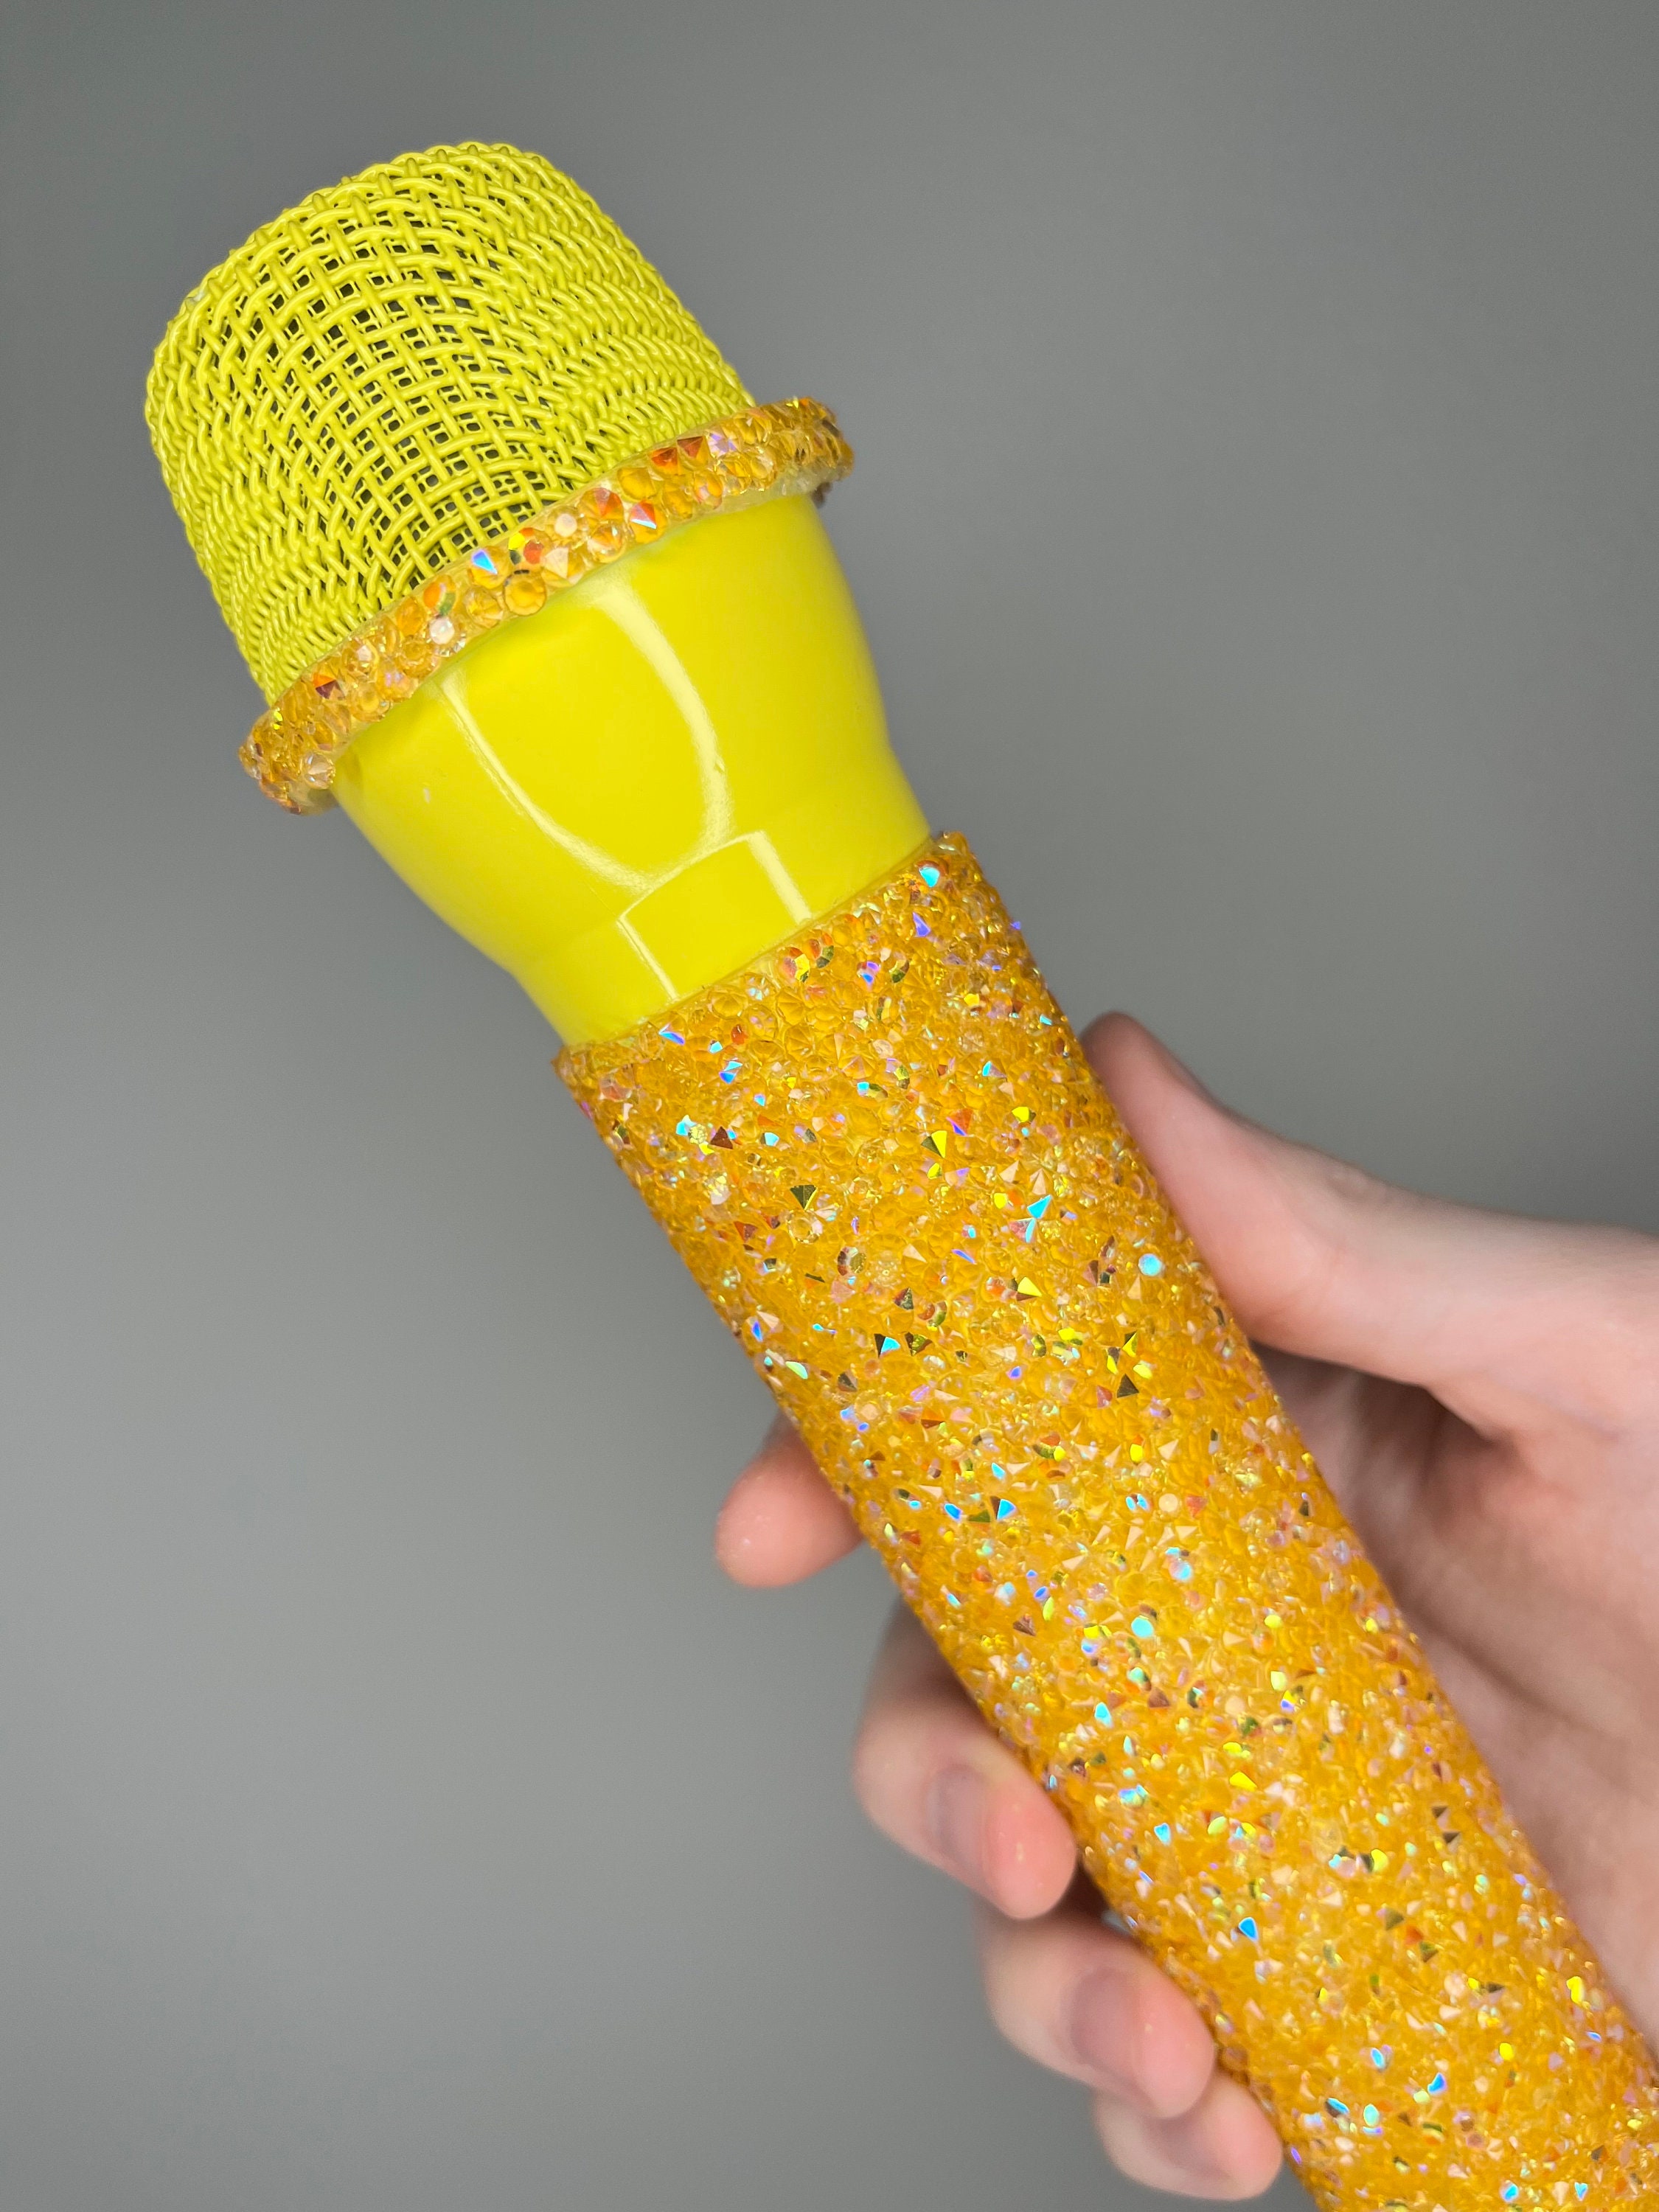 FAUX ACCESSOIRE DE Microphone, 2 pièces, strass scintillants